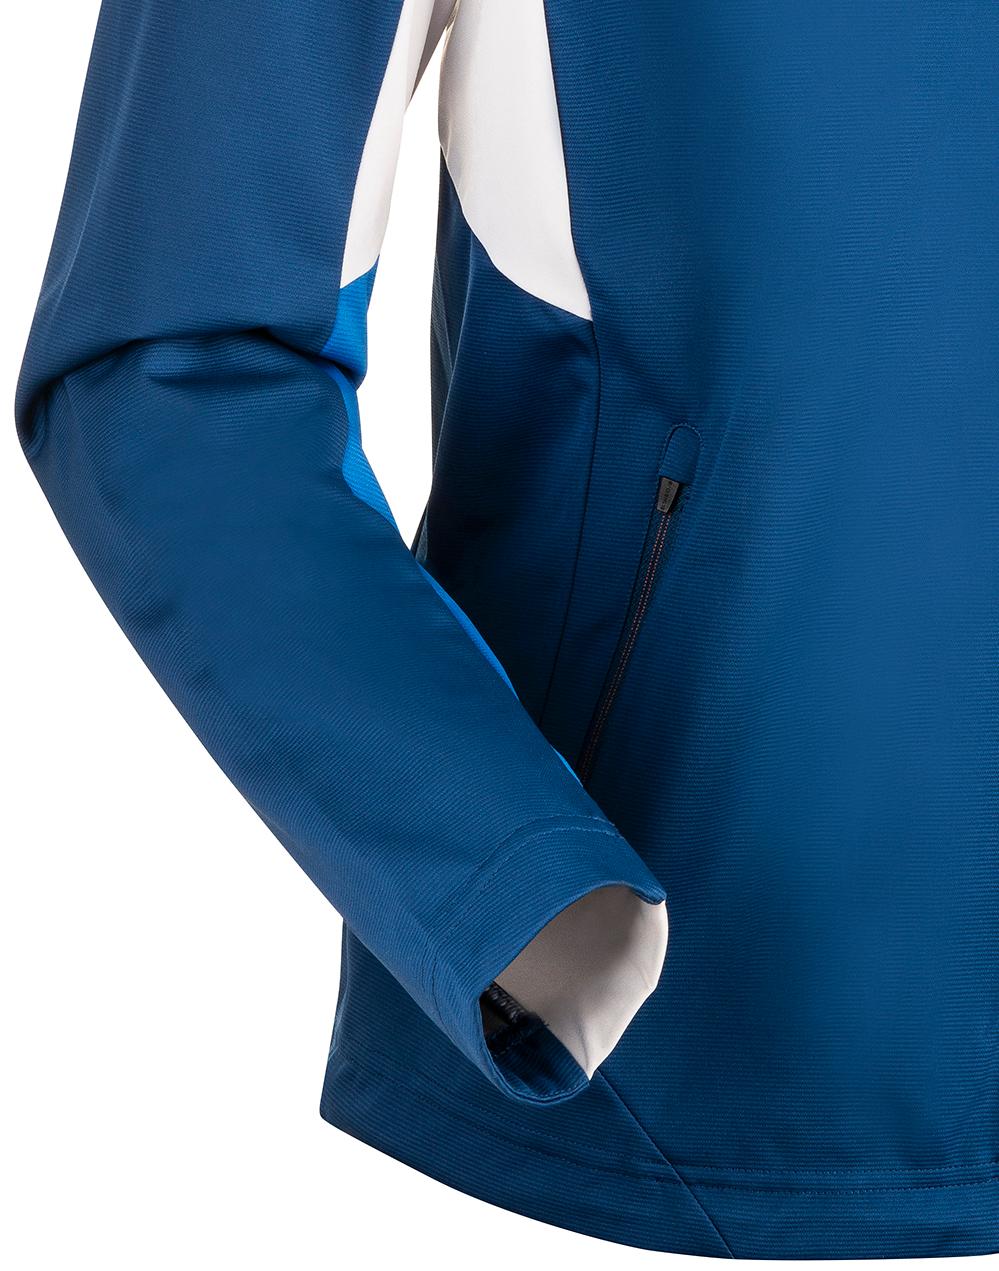 Куртка беговая Bjorn Daehlie 2020-21 Contender Estate Blue